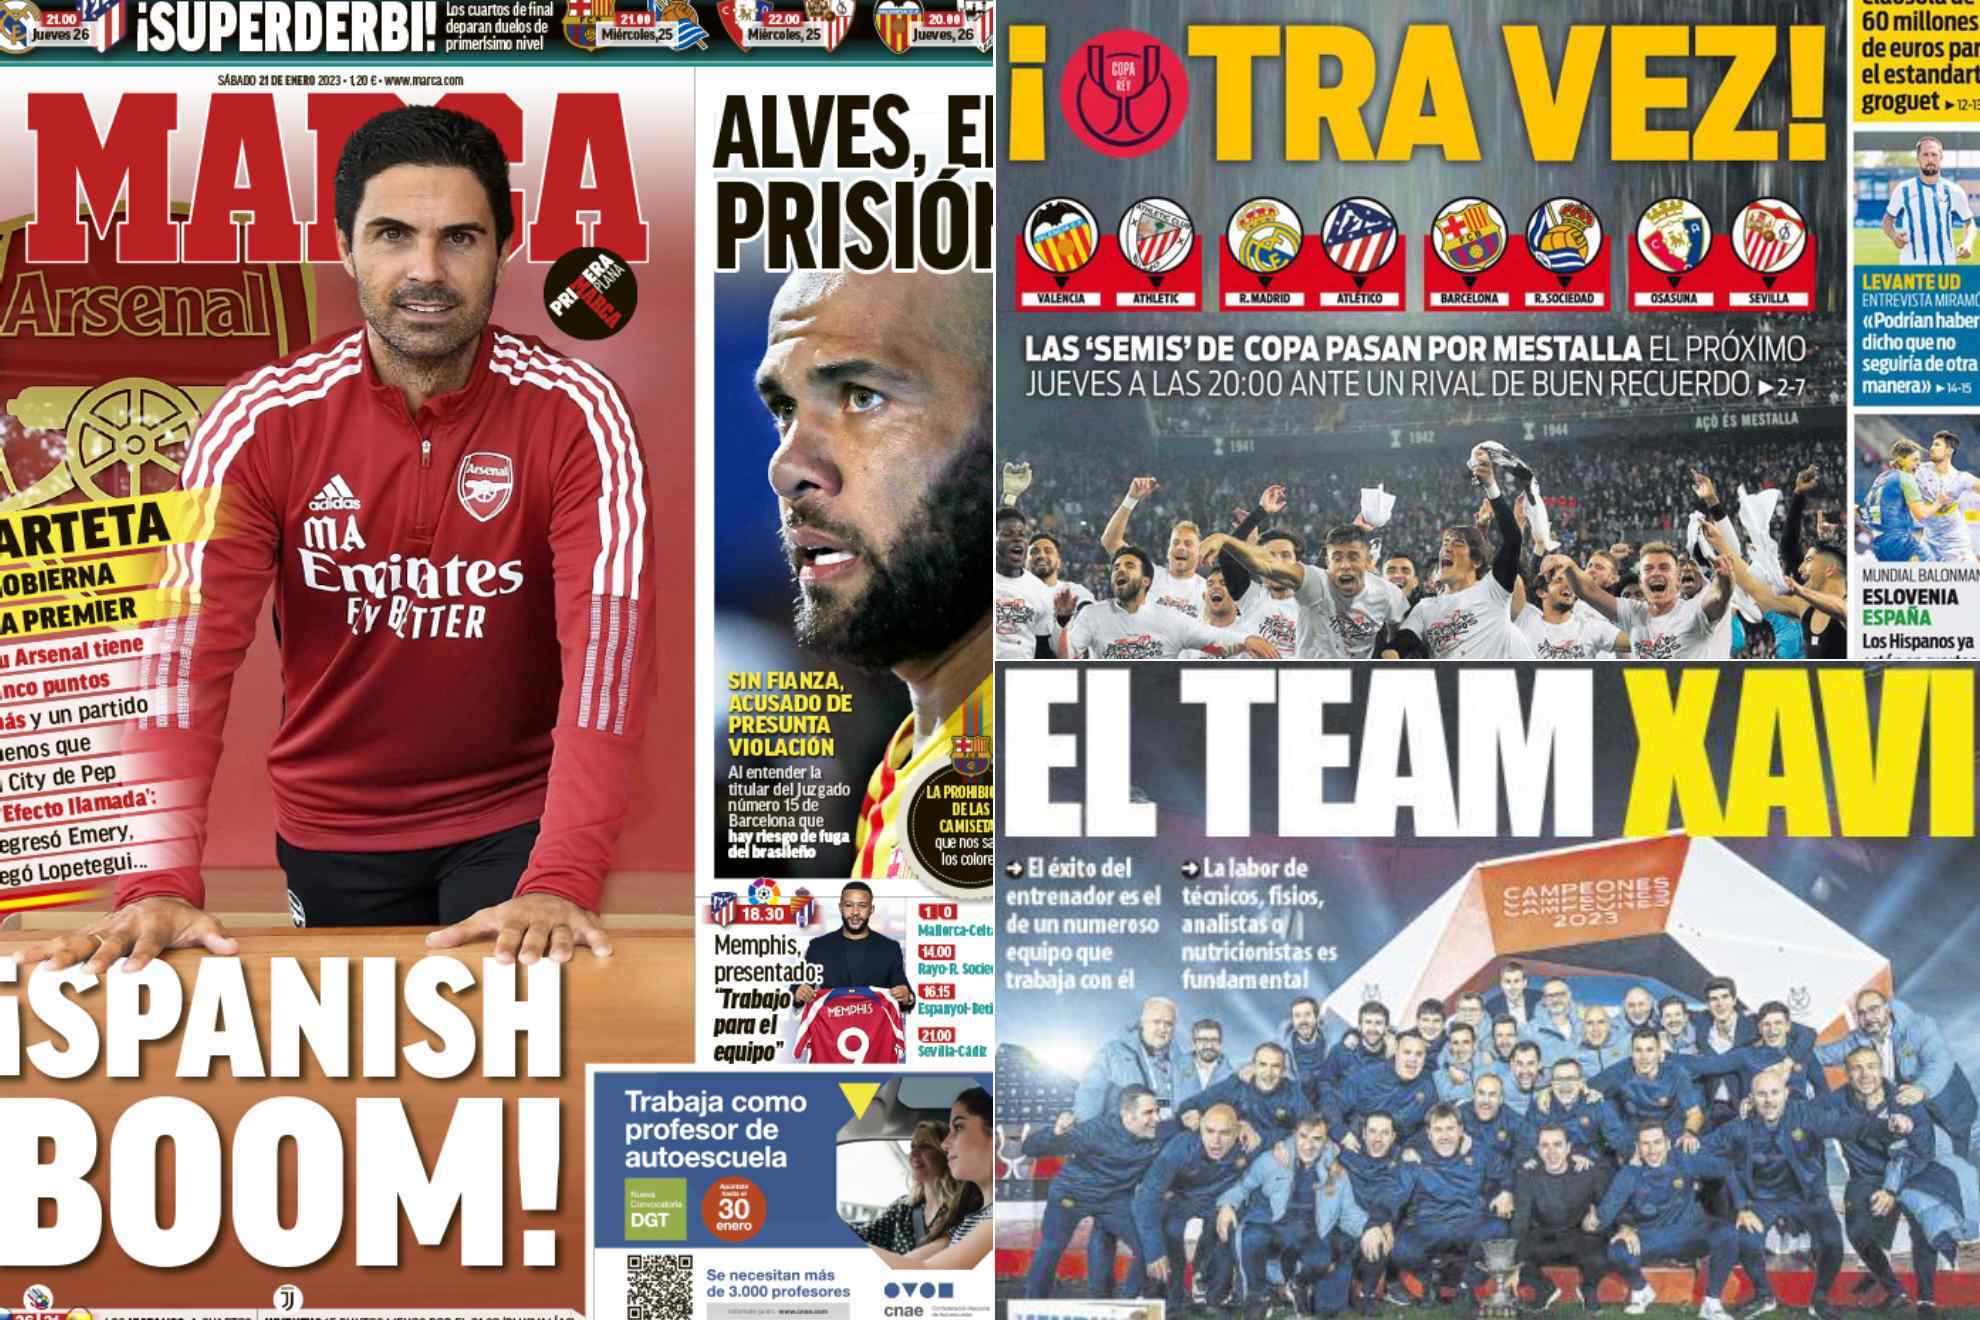 Las portadas: Spanish boom en la Premier, Alves en prisión, el duro castigo a la Juve...